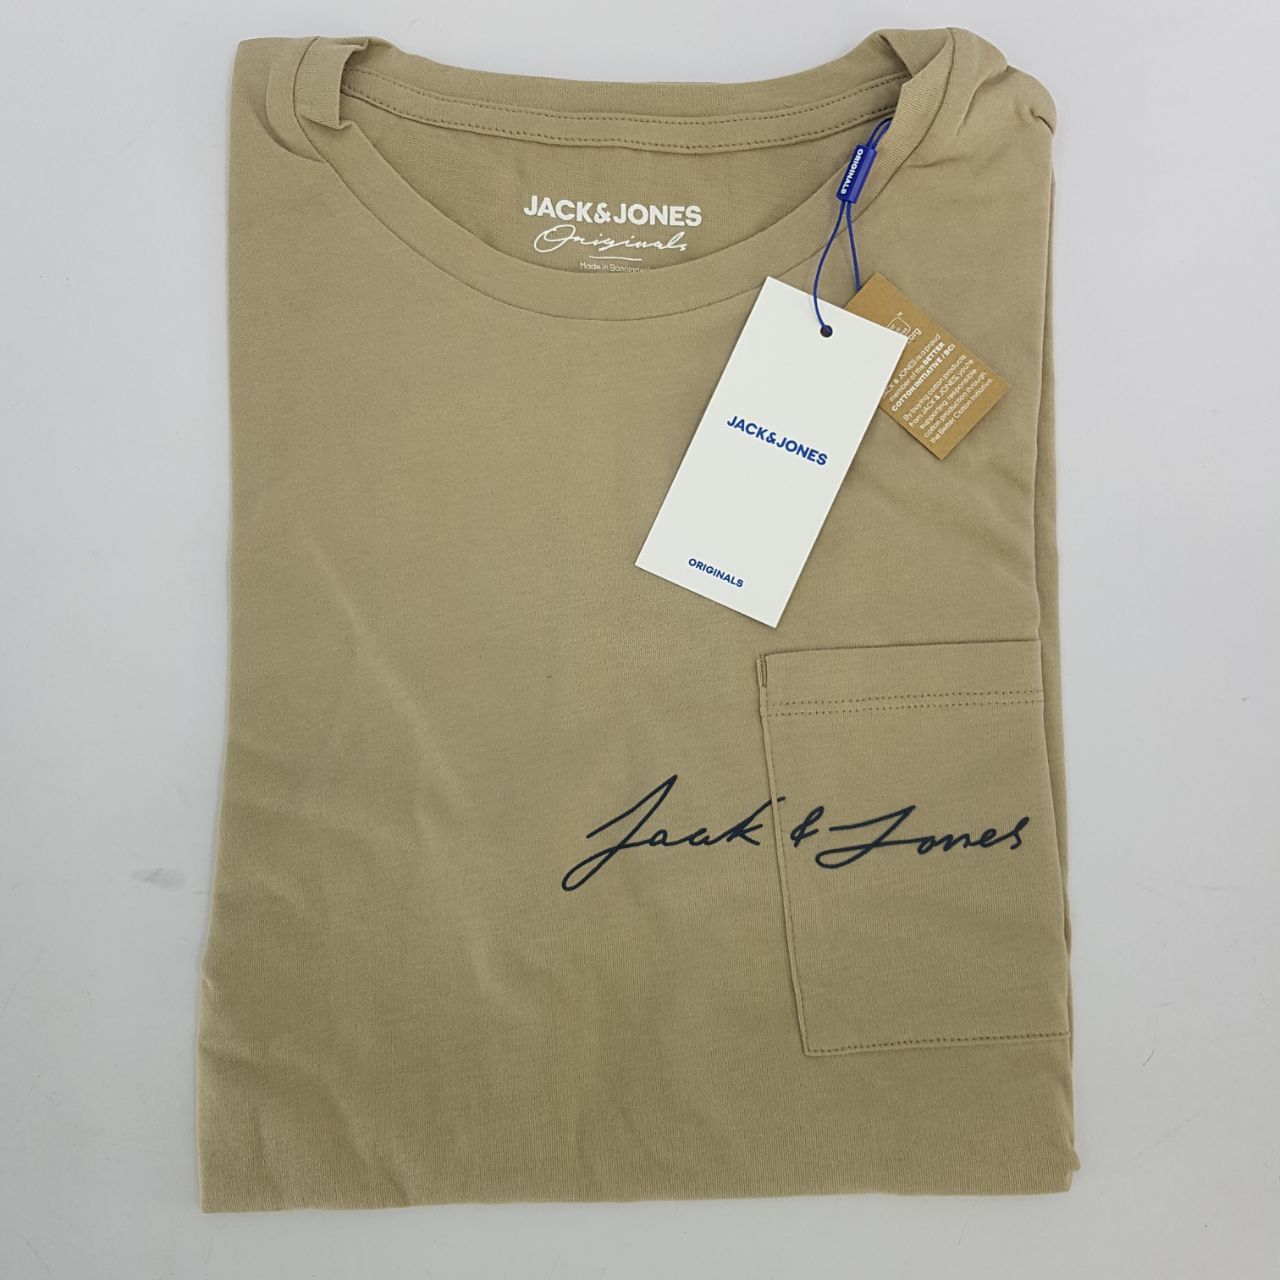 تی شرت آستین کوتاه مردانه جک اند جونز مدل ساده جیب دار کد Olympus12180662 رنگ کرم -  - 3